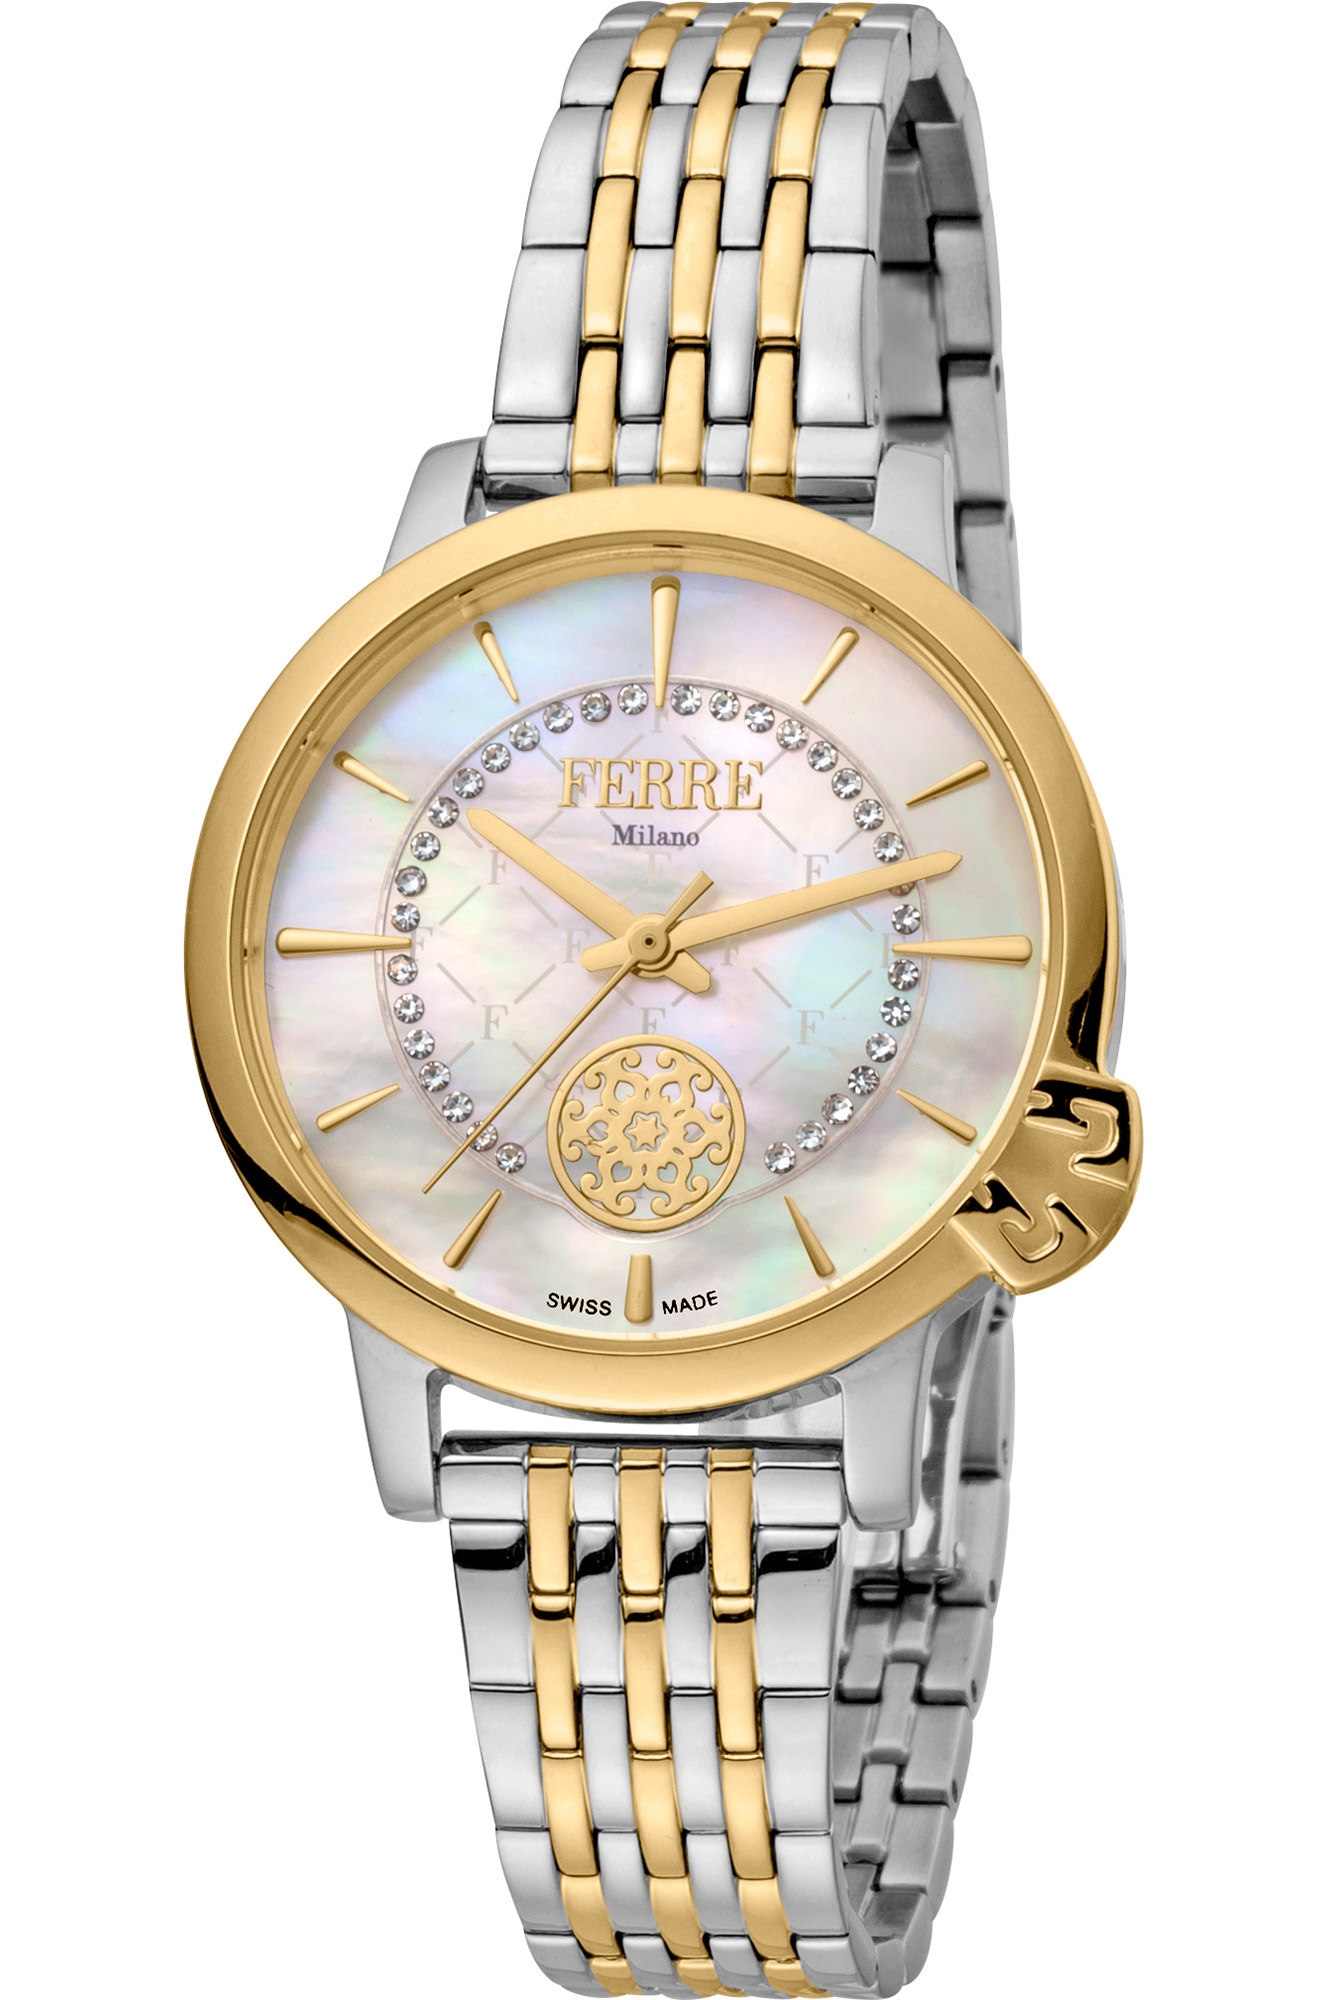 Reloj Ferrè Milano Lady fm1l150m0091